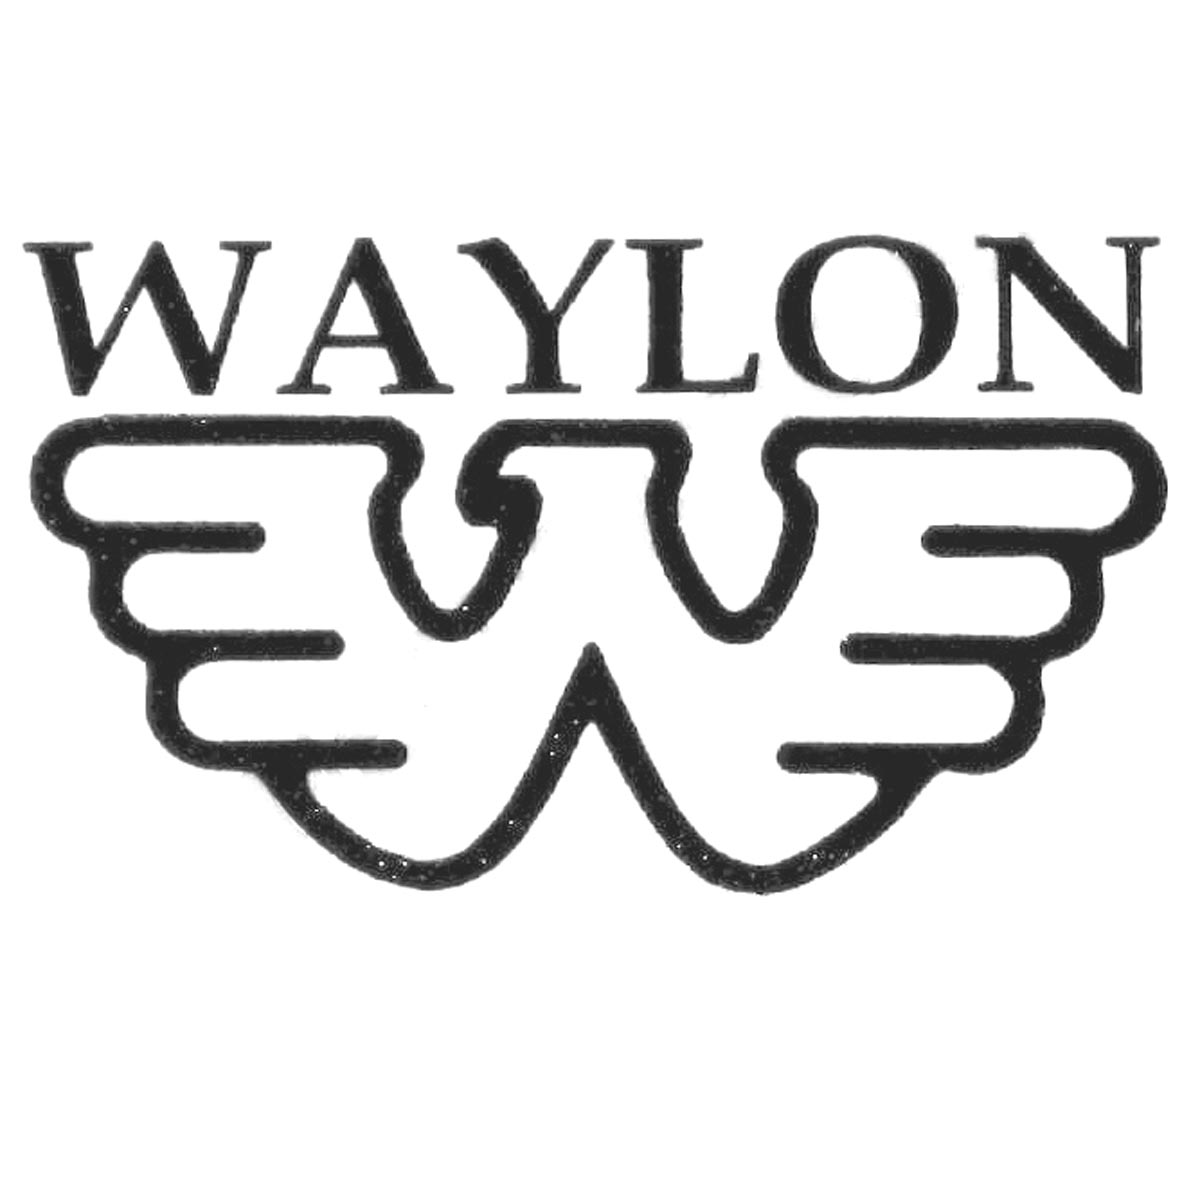 Waylon Jennings Headstock Waterslide Decal for guitar